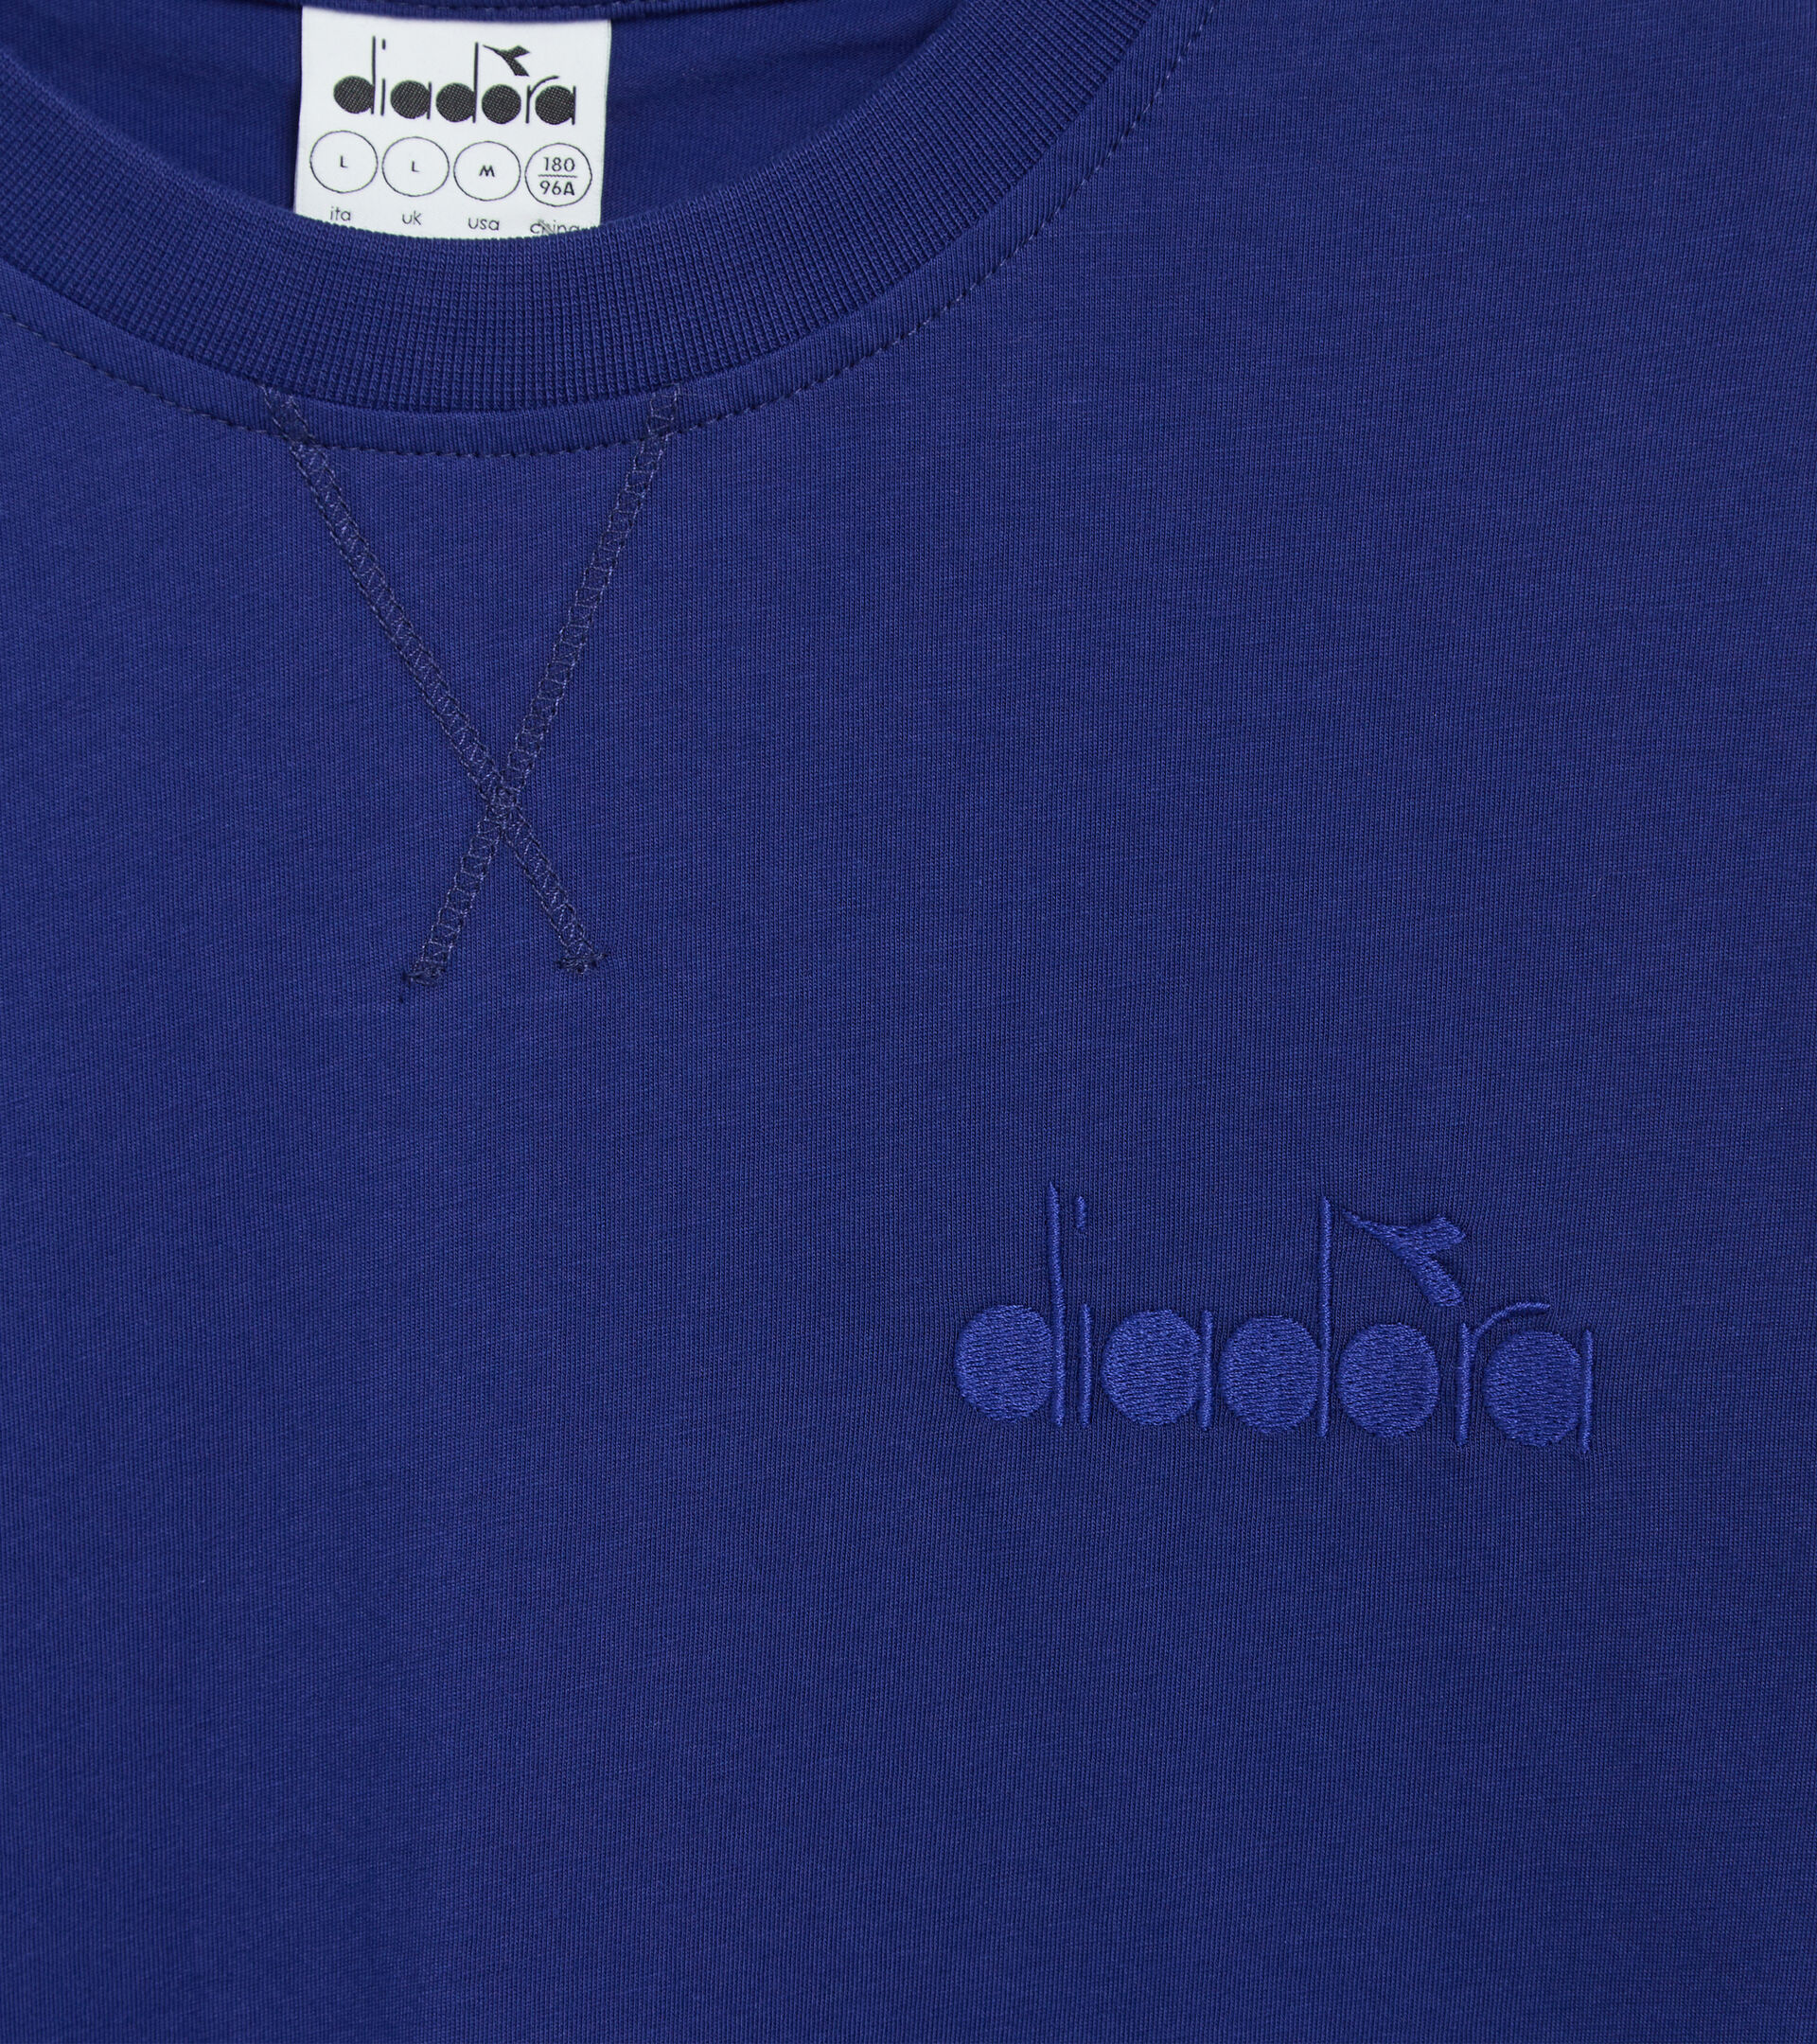 Cotton t-shirt - Gender neutral T-SHIRT SS SPW LOGO BLAUDRUCK - Diadora